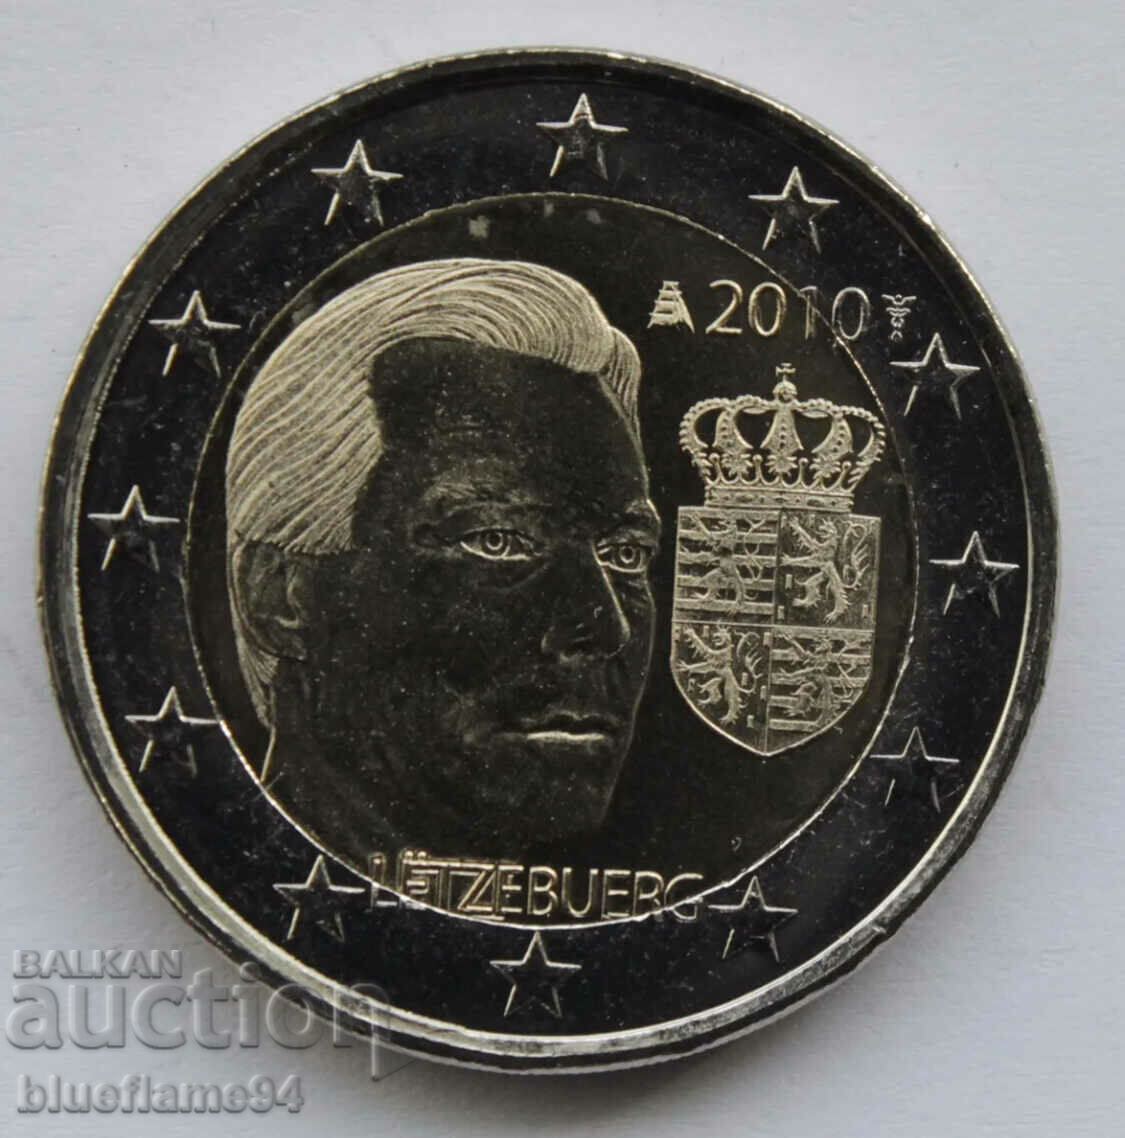 2 euro Luxemburg 2010